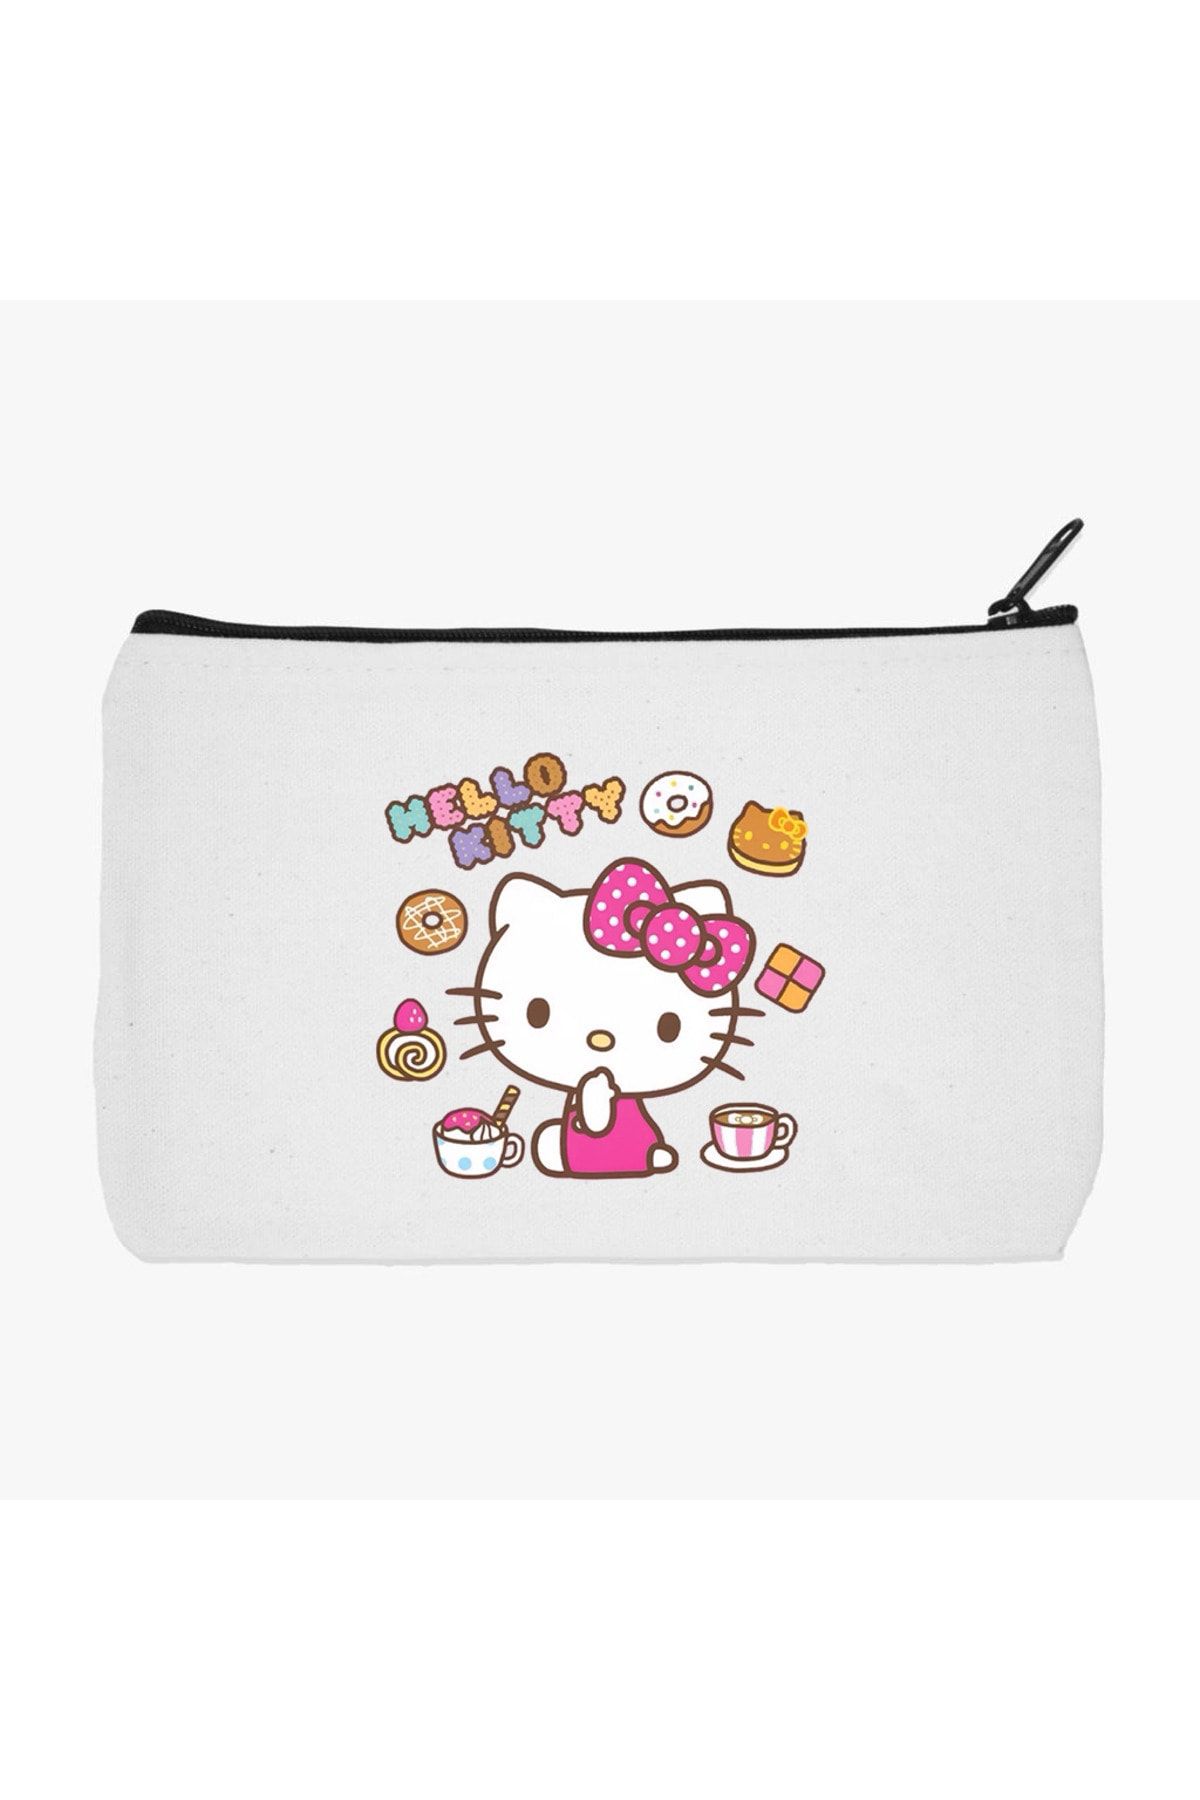 GRAFİKSPAN Hello Kitty 2 Makyaj Çantası, Kalemlik, El Çantası, Baskılı Bez Çanta